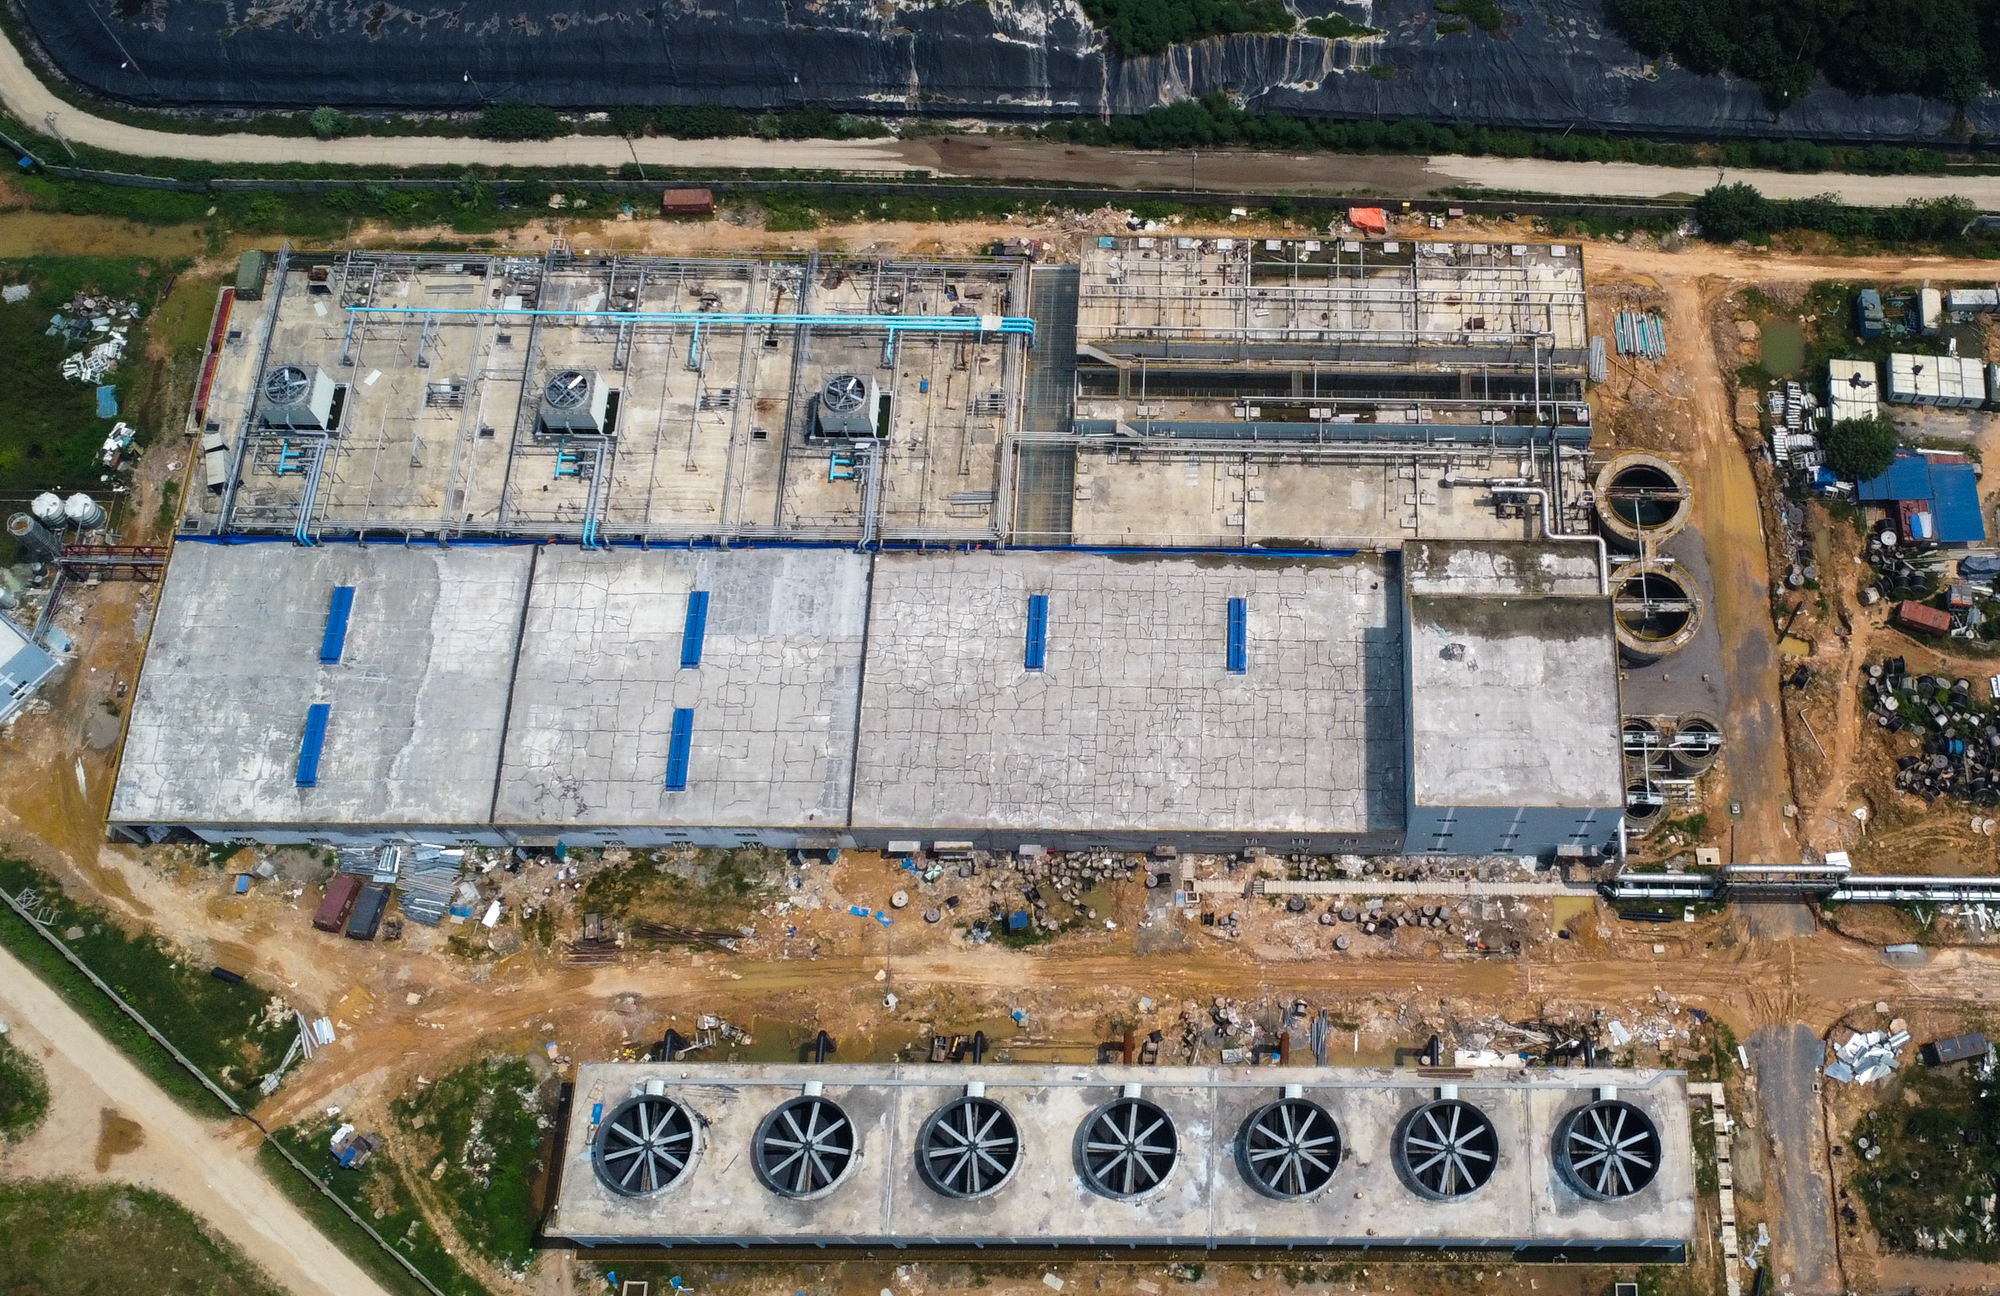  Cảnh vận hành của nhà máy điện rác lớn thứ 2 thế giới ở Hà Nội - Ảnh 12.